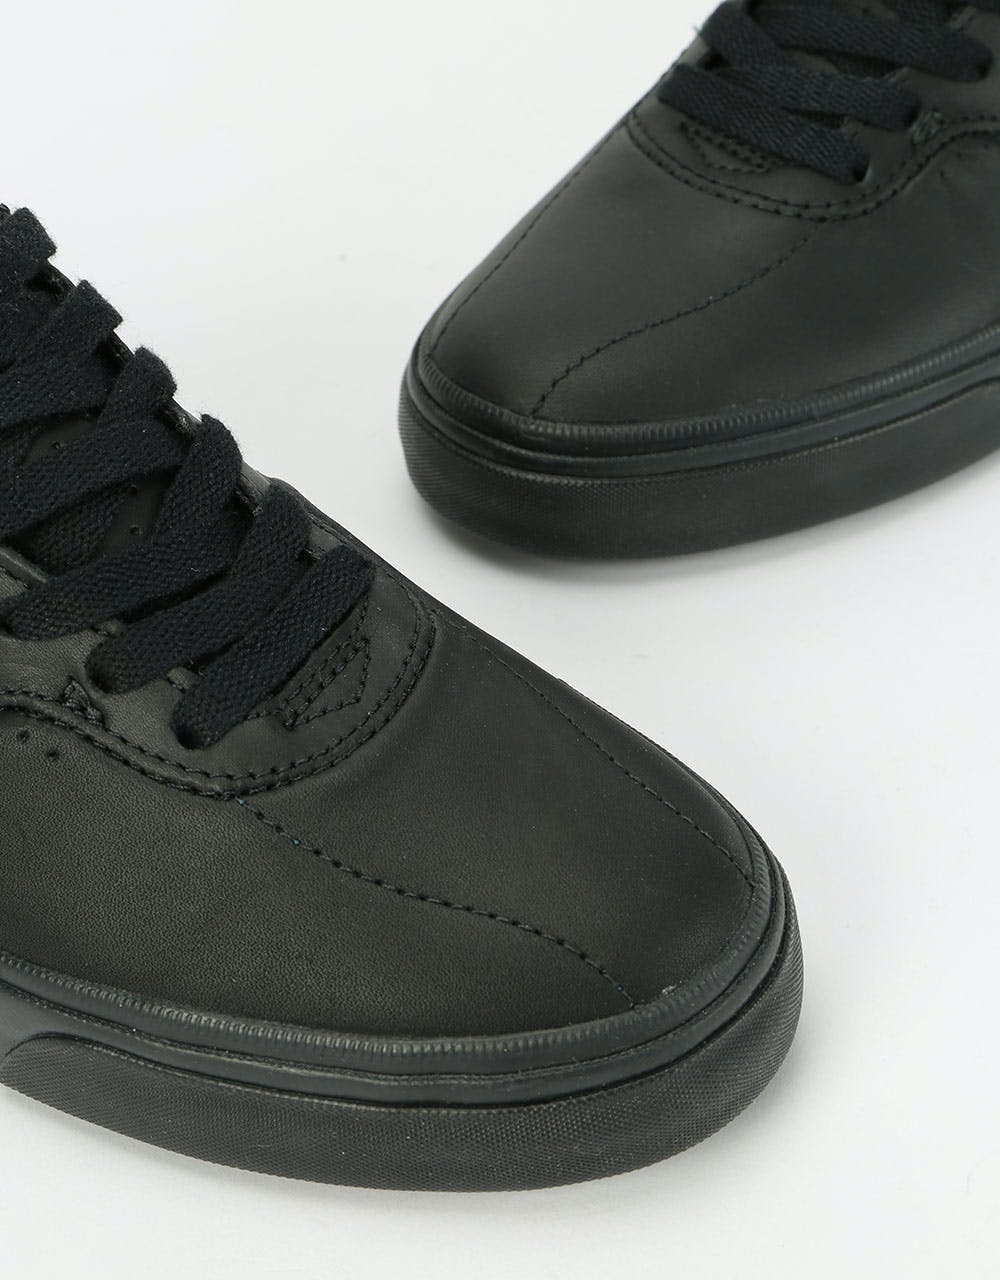 Converse Louie Lopez Pro Ox Leather Skate Shoes - Black/Black/Black